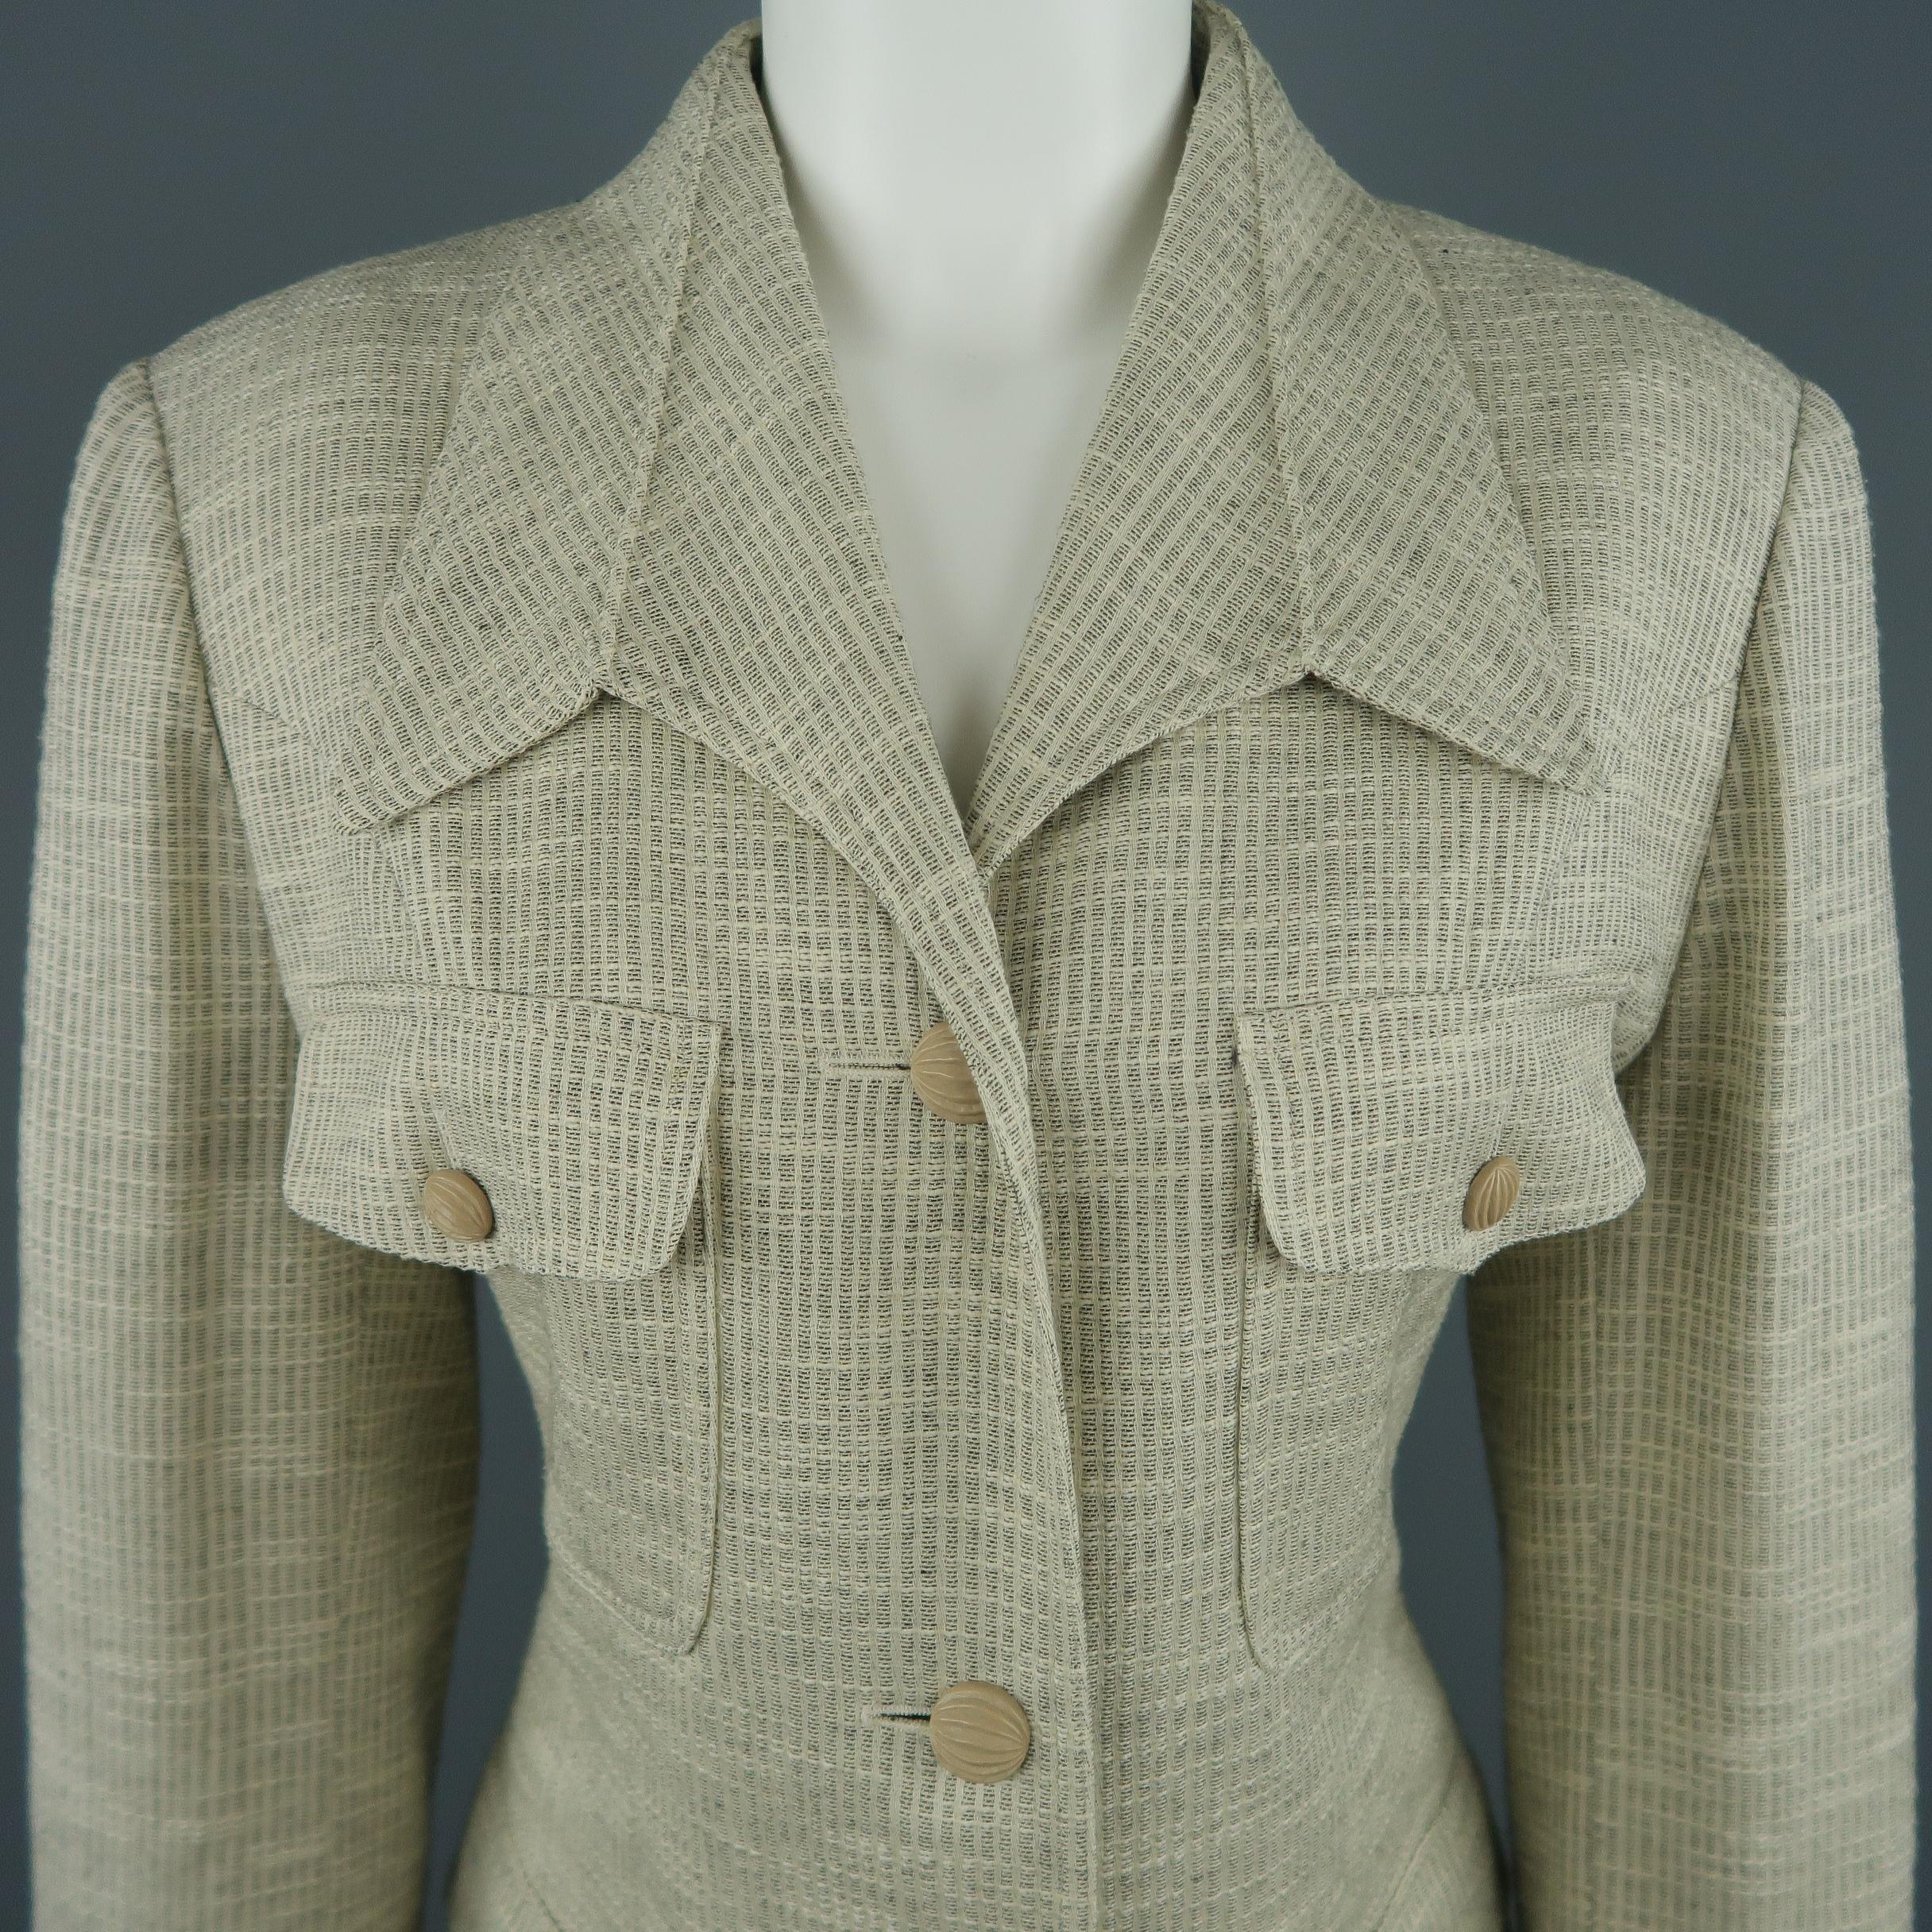 Vintage LANVIN Jacke aus beigefarbenem, strukturiertem Stoff mit abwärts gerichtetem Kragen, drei Knöpfen, einreihiger Vorderseite, aufgesetzten Klappentaschen und beigen, strukturierten Knöpfen.
 
Ausgezeichneter Pre-Owned Zustand.
Gezeichnet: FR